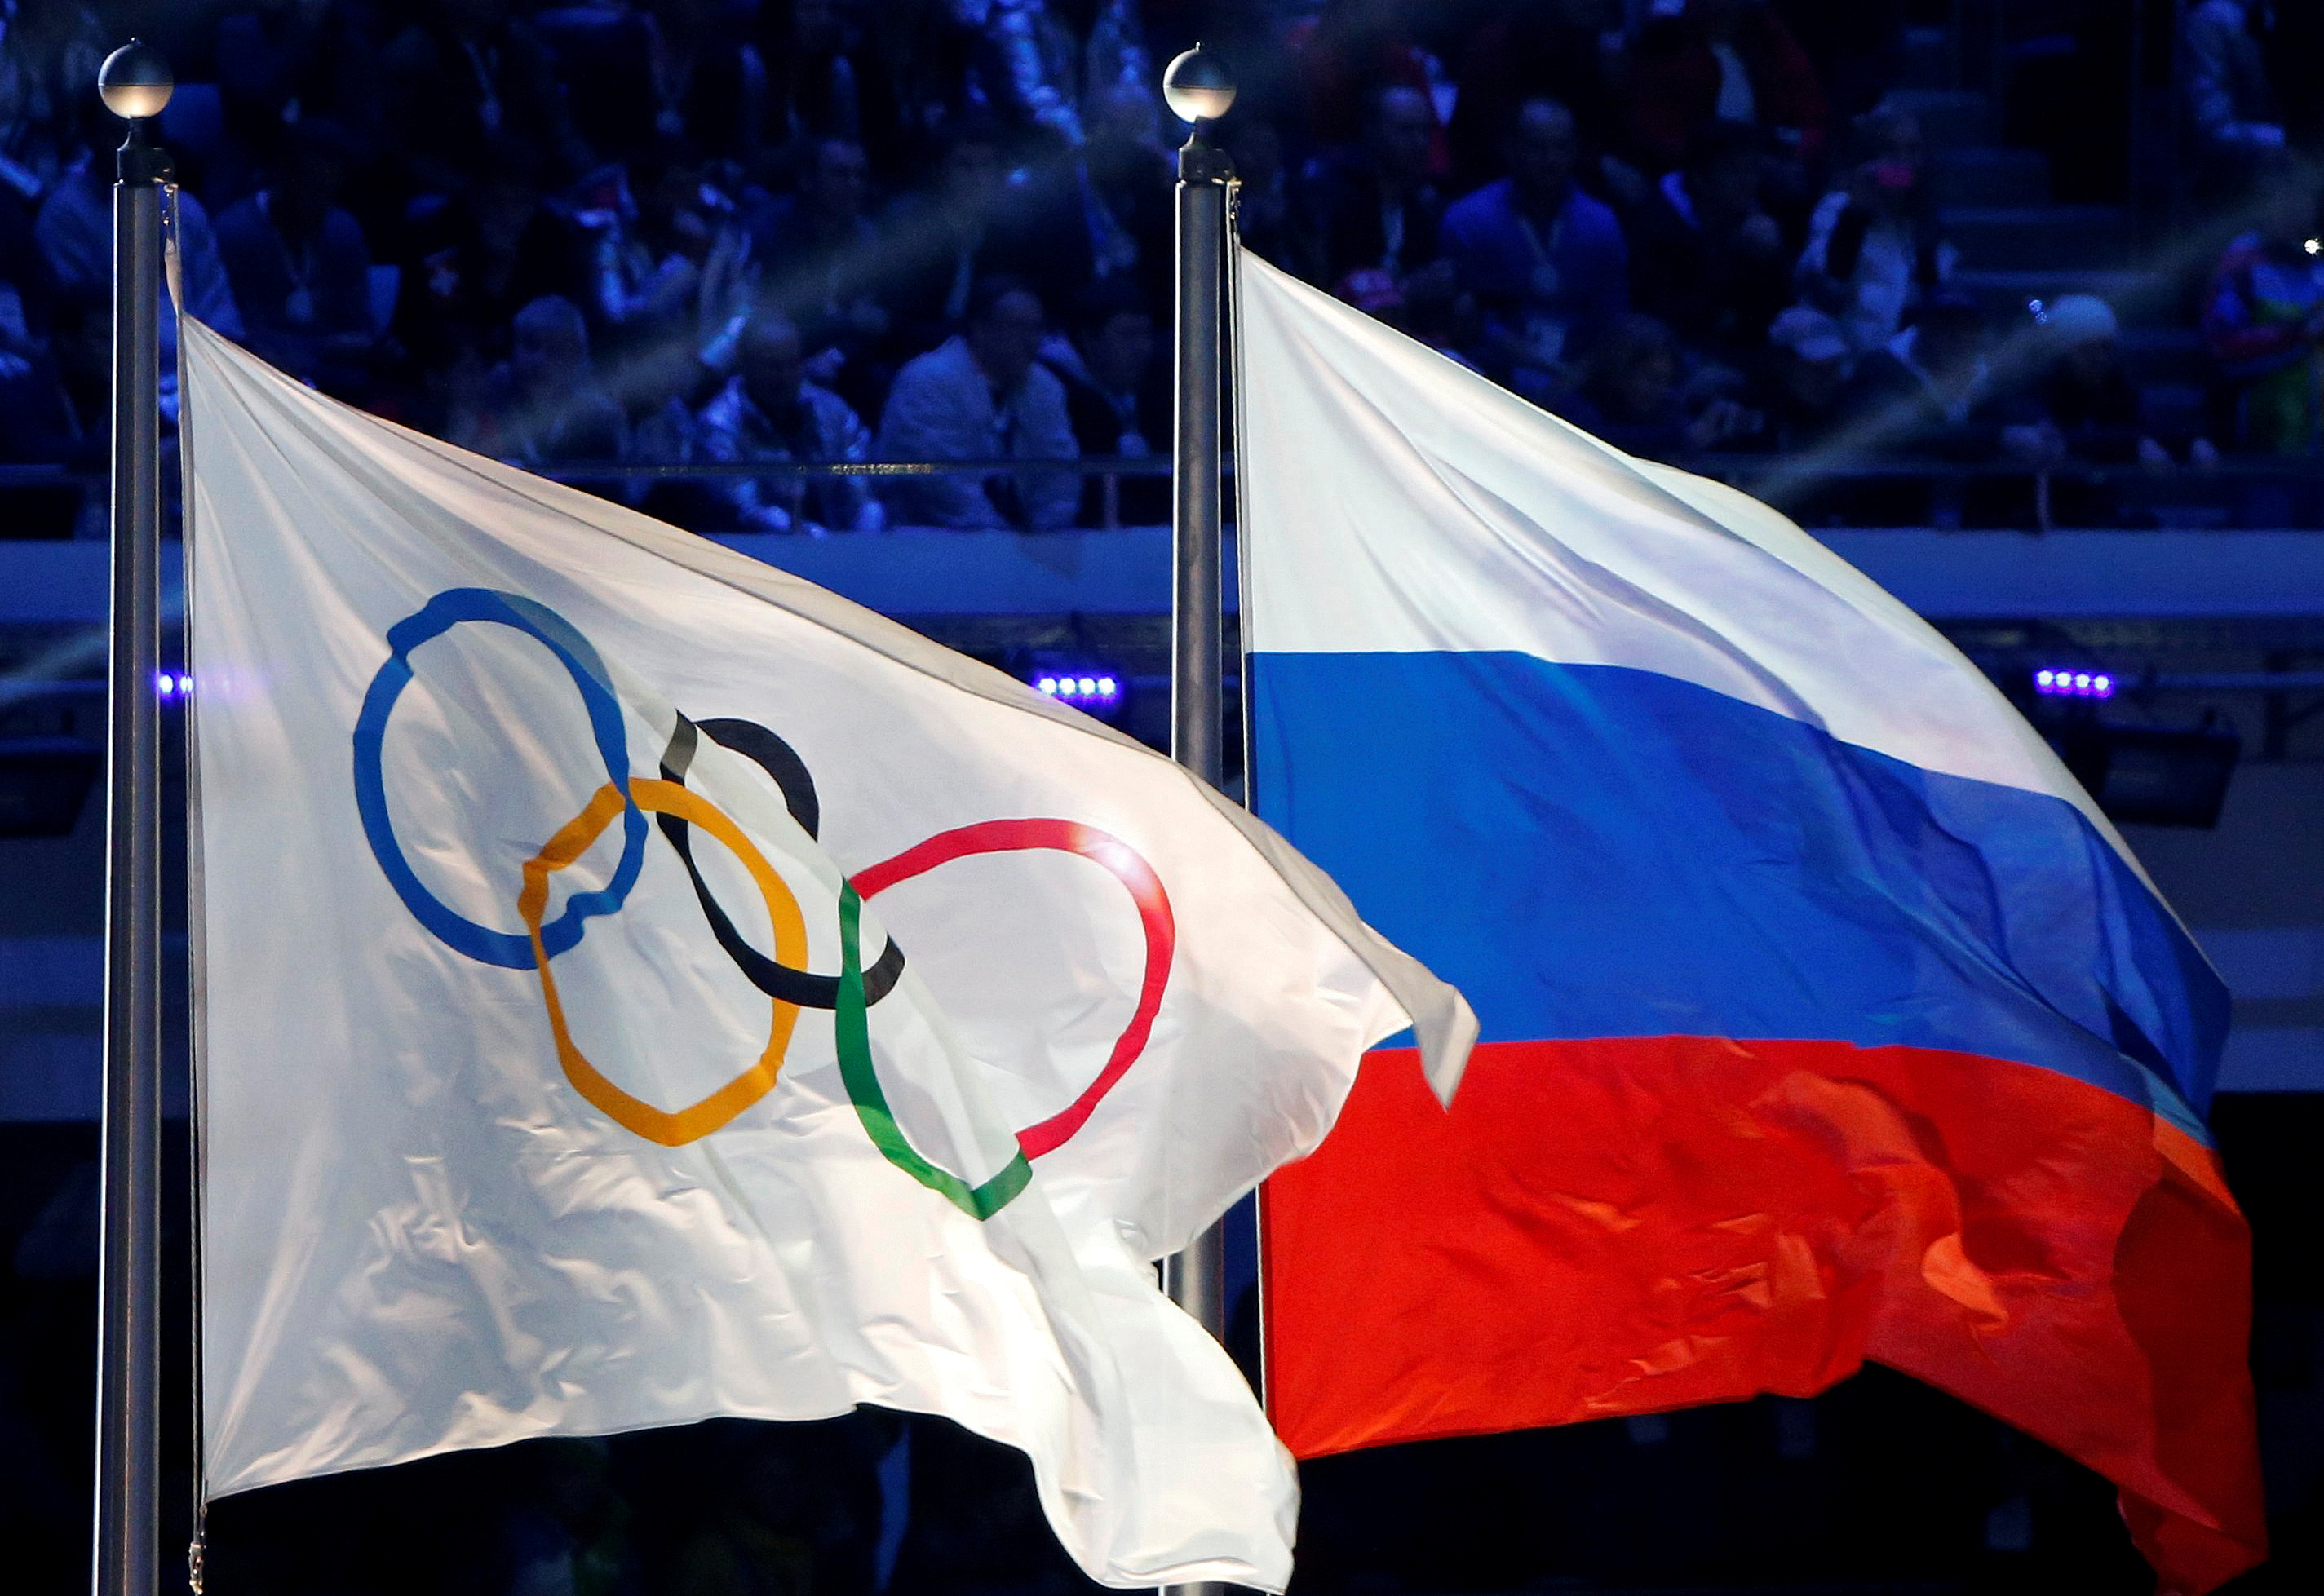 FOTO DE ARCHIVO: La bandera nacional rusa y la bandera olímpica se ven durante la ceremonia de clausura de los Juegos Olímpicos de Invierno de Sochi 2014